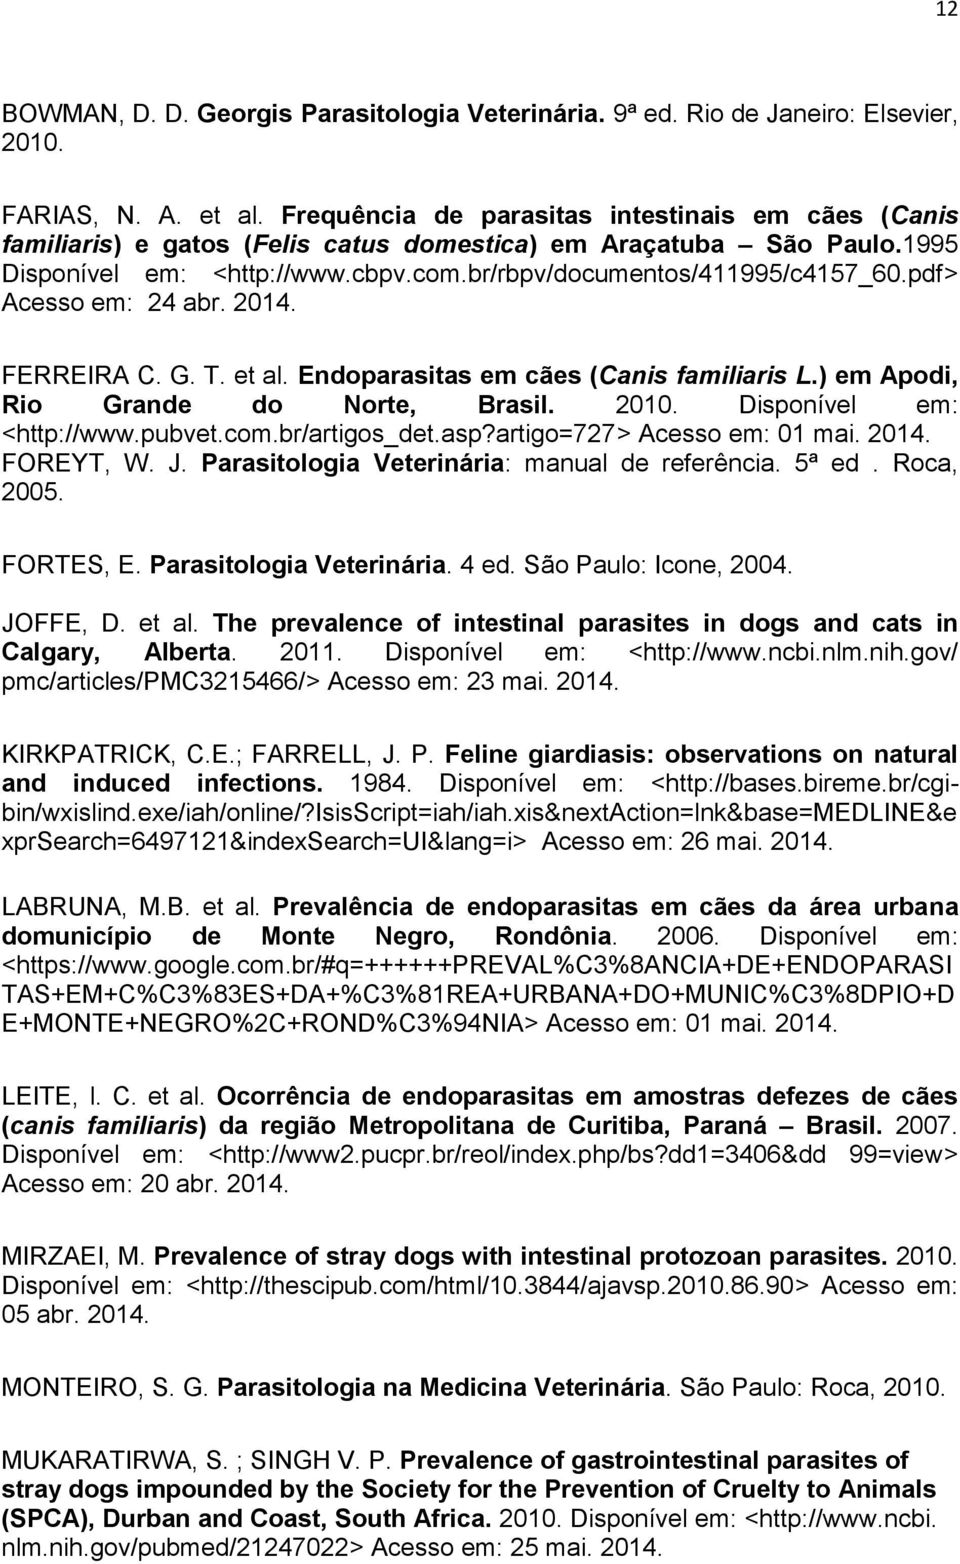 pdf> Acesso em: 24 abr. 2014. FERREIRA C. G. T. et al. Endoparasitas em cães (Canis familiaris L.) em Apodi, Rio Grande do Norte, Brasil. 2010. Disponível em: <http://www.pubvet.com.br/artigos_det.